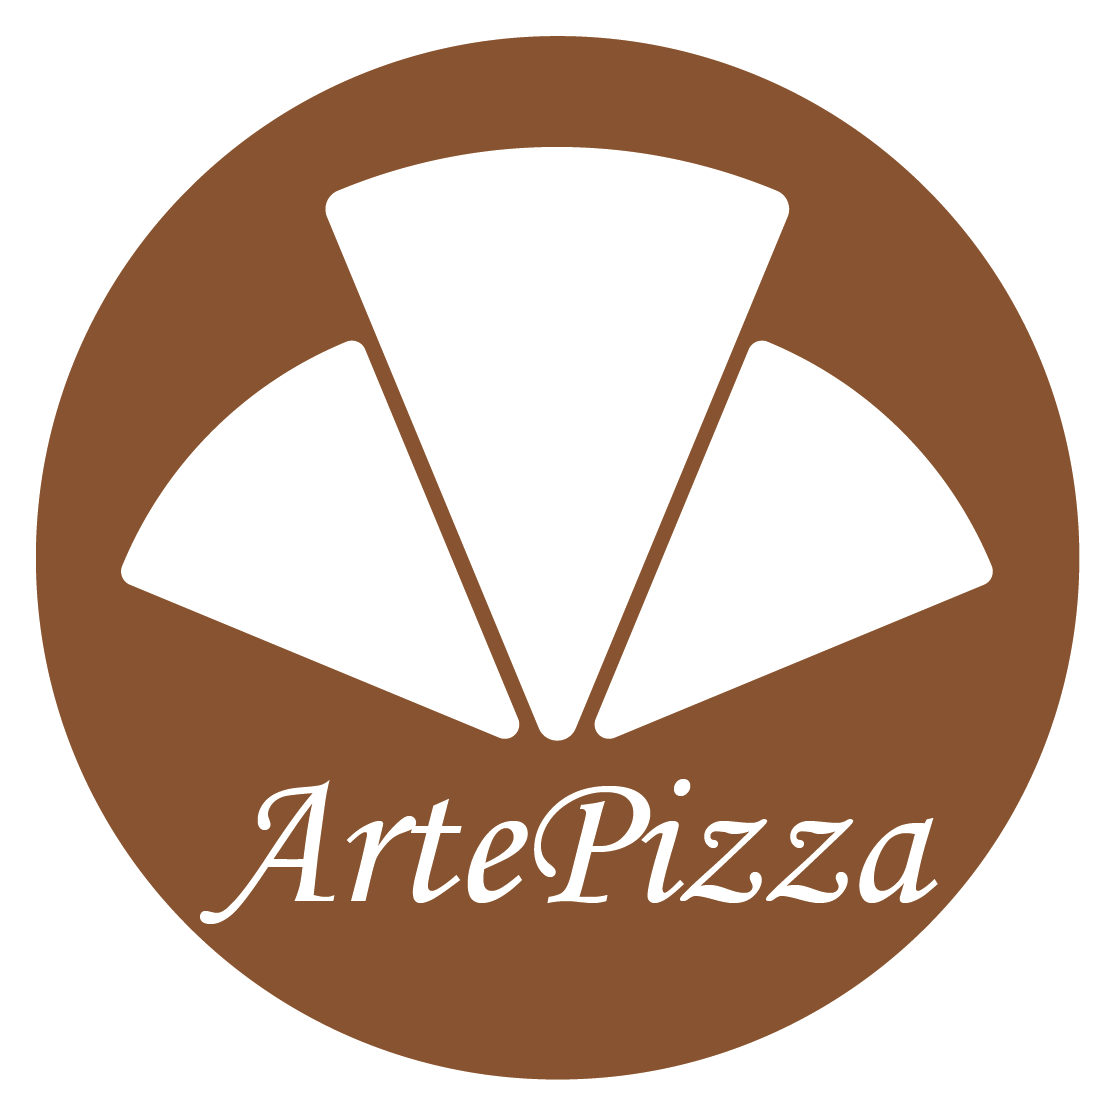 artepizza - ristorante pizzeria a pontedera